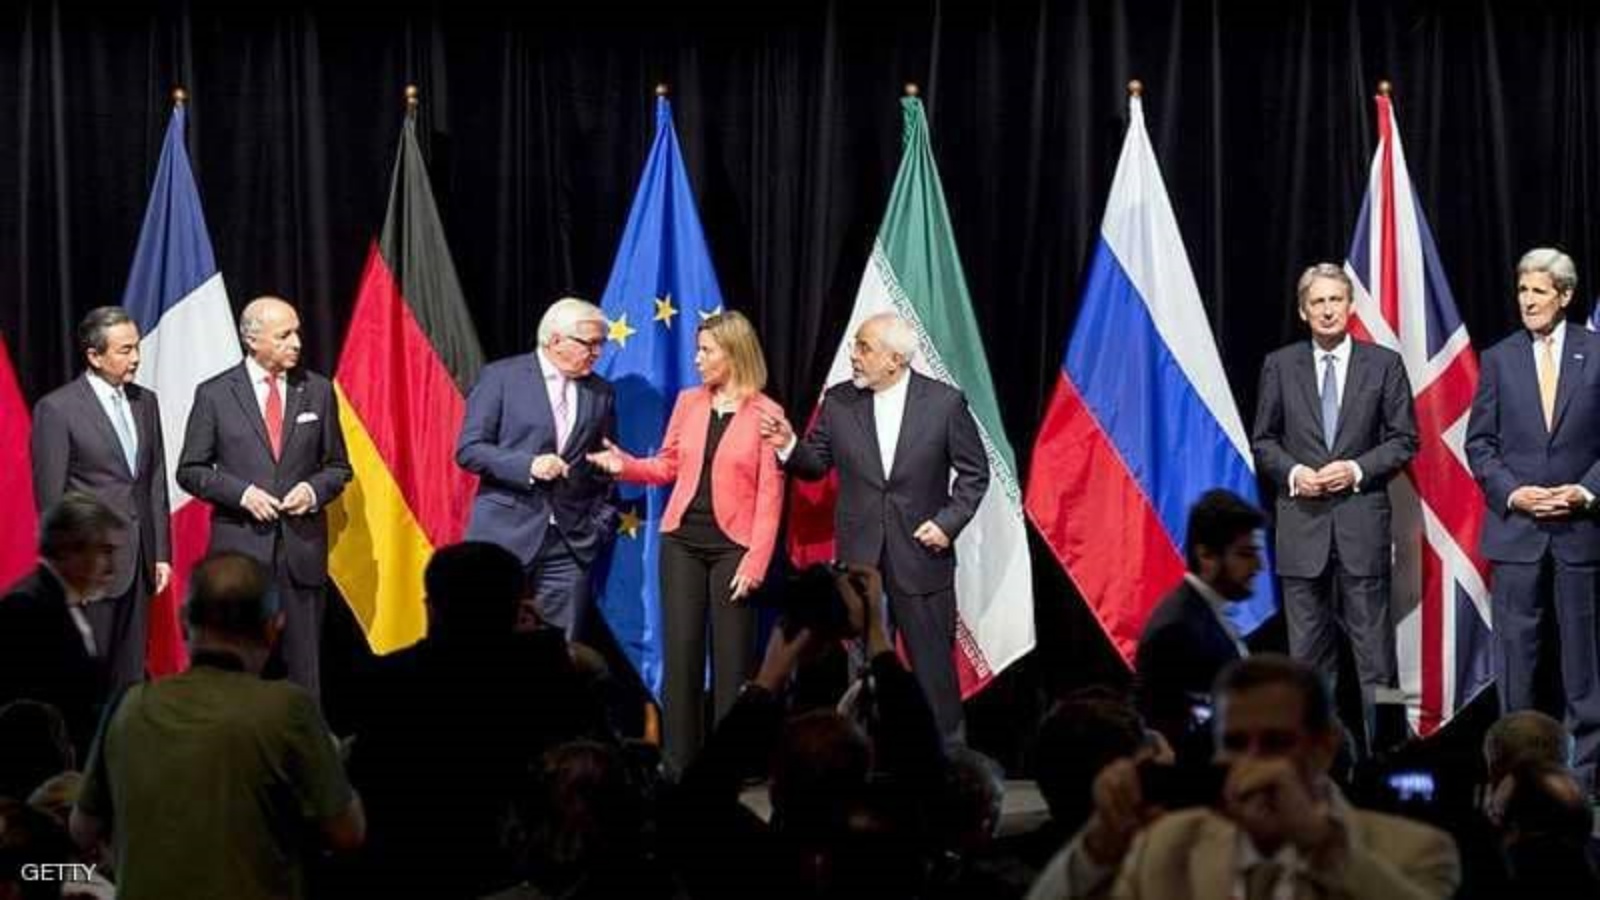 الصورة بعد توقيع الاتفاق النووي الايراني مع دول خمسة زائد واحد عام 2015